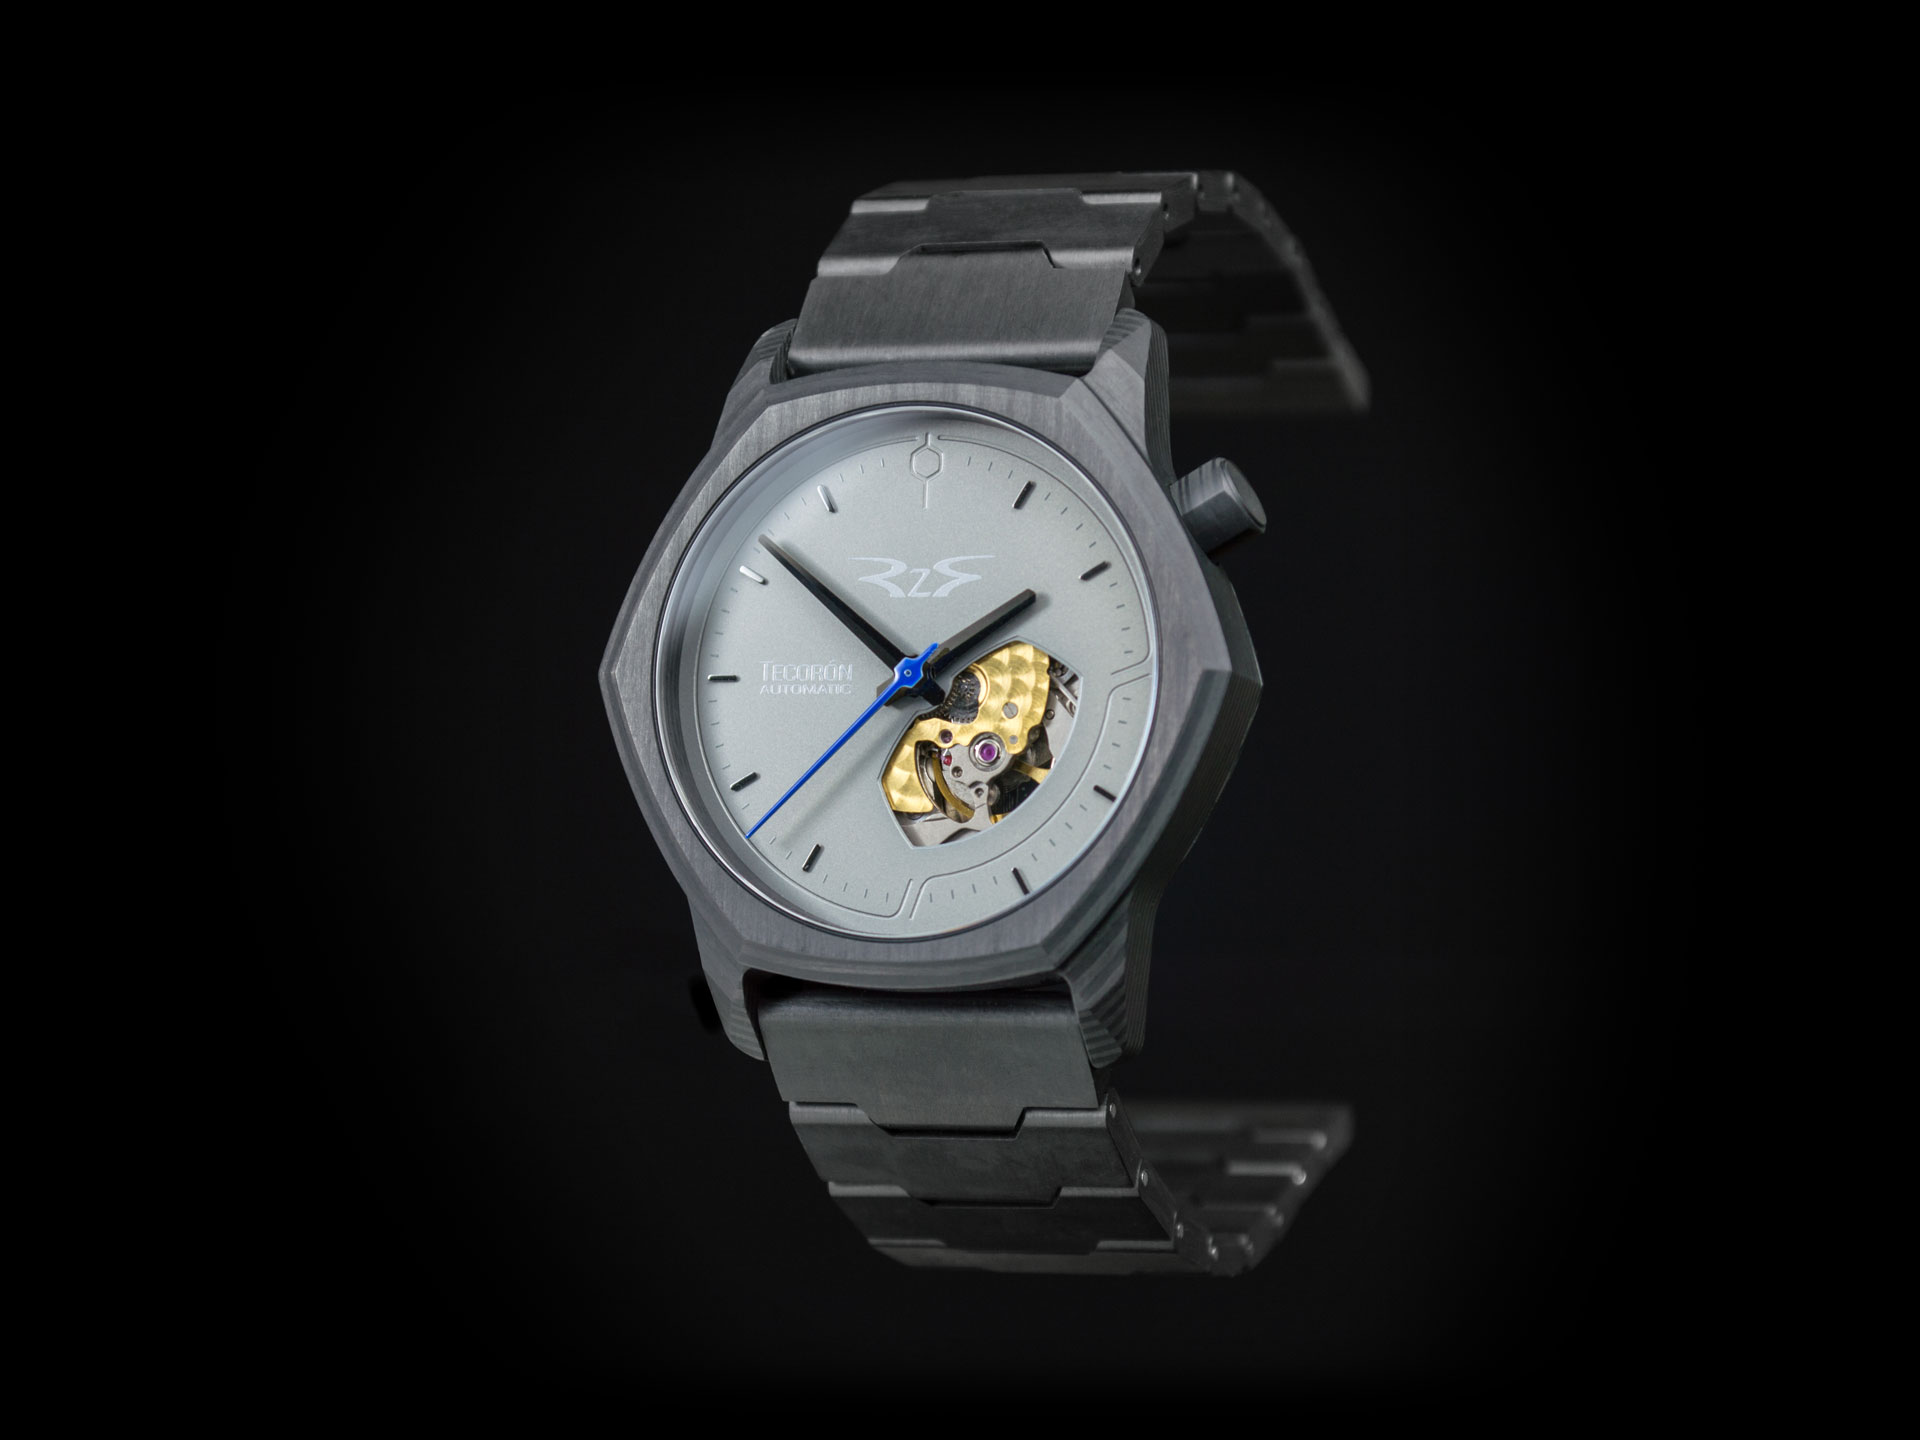 Carbon fiber watch